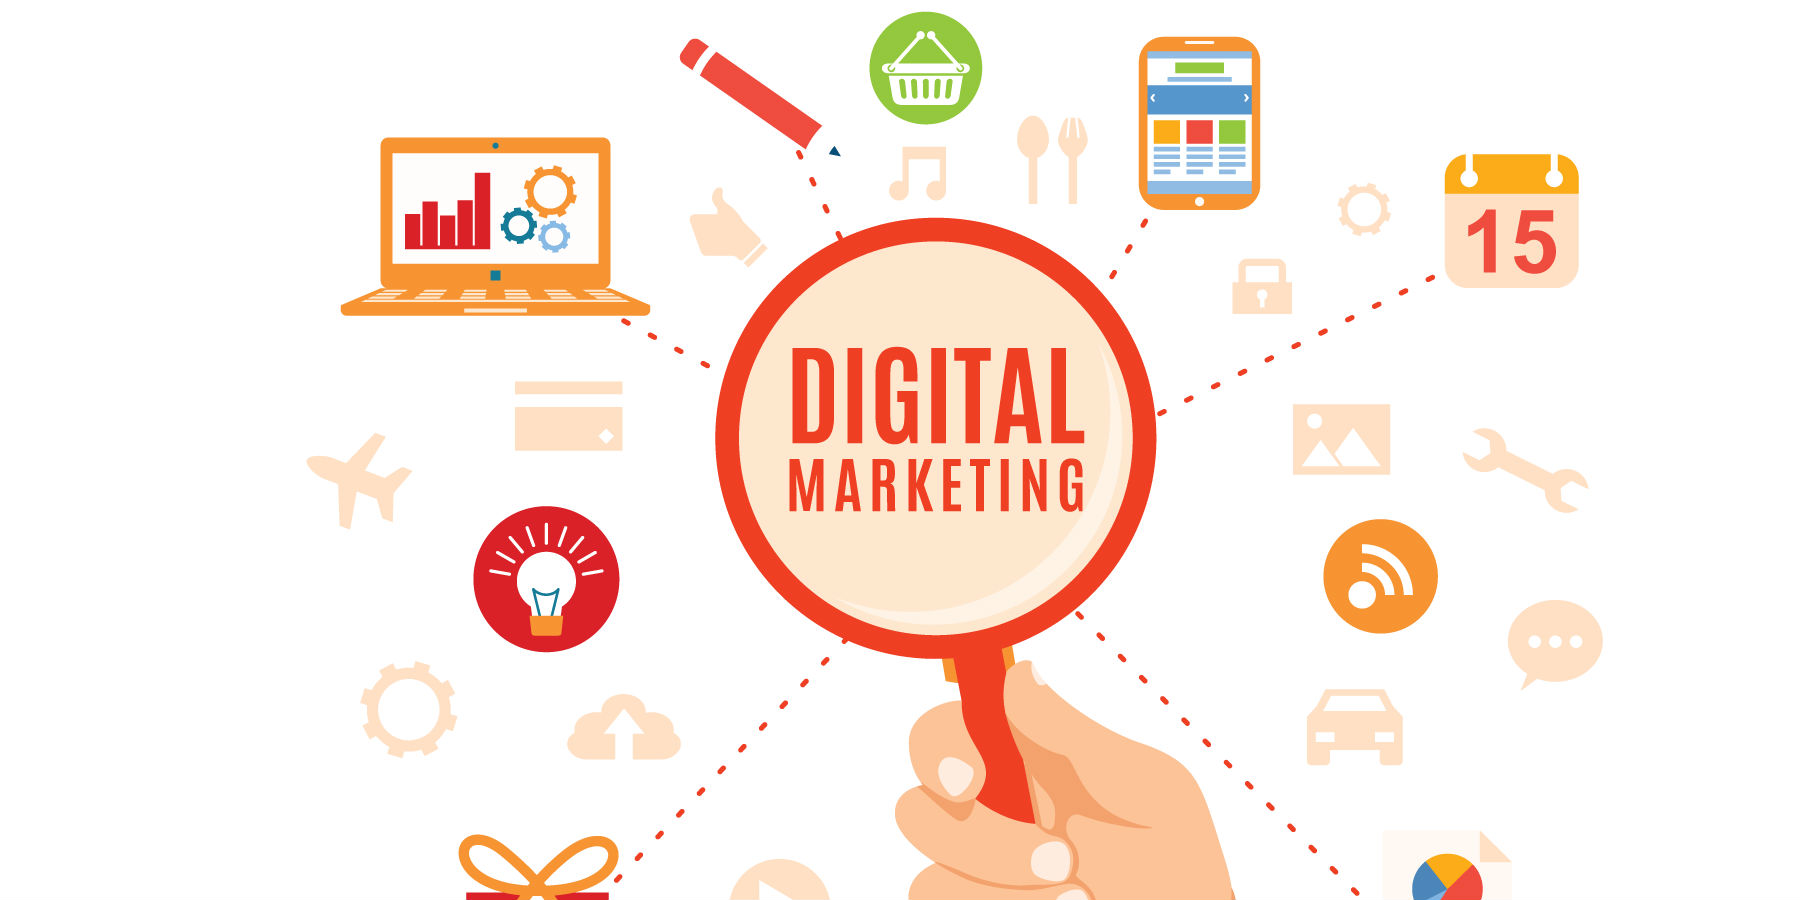 Digital Marketing cần có có tư duy sáng tạo, nhanh nhạy để bắt kịp xu hướng thị trường